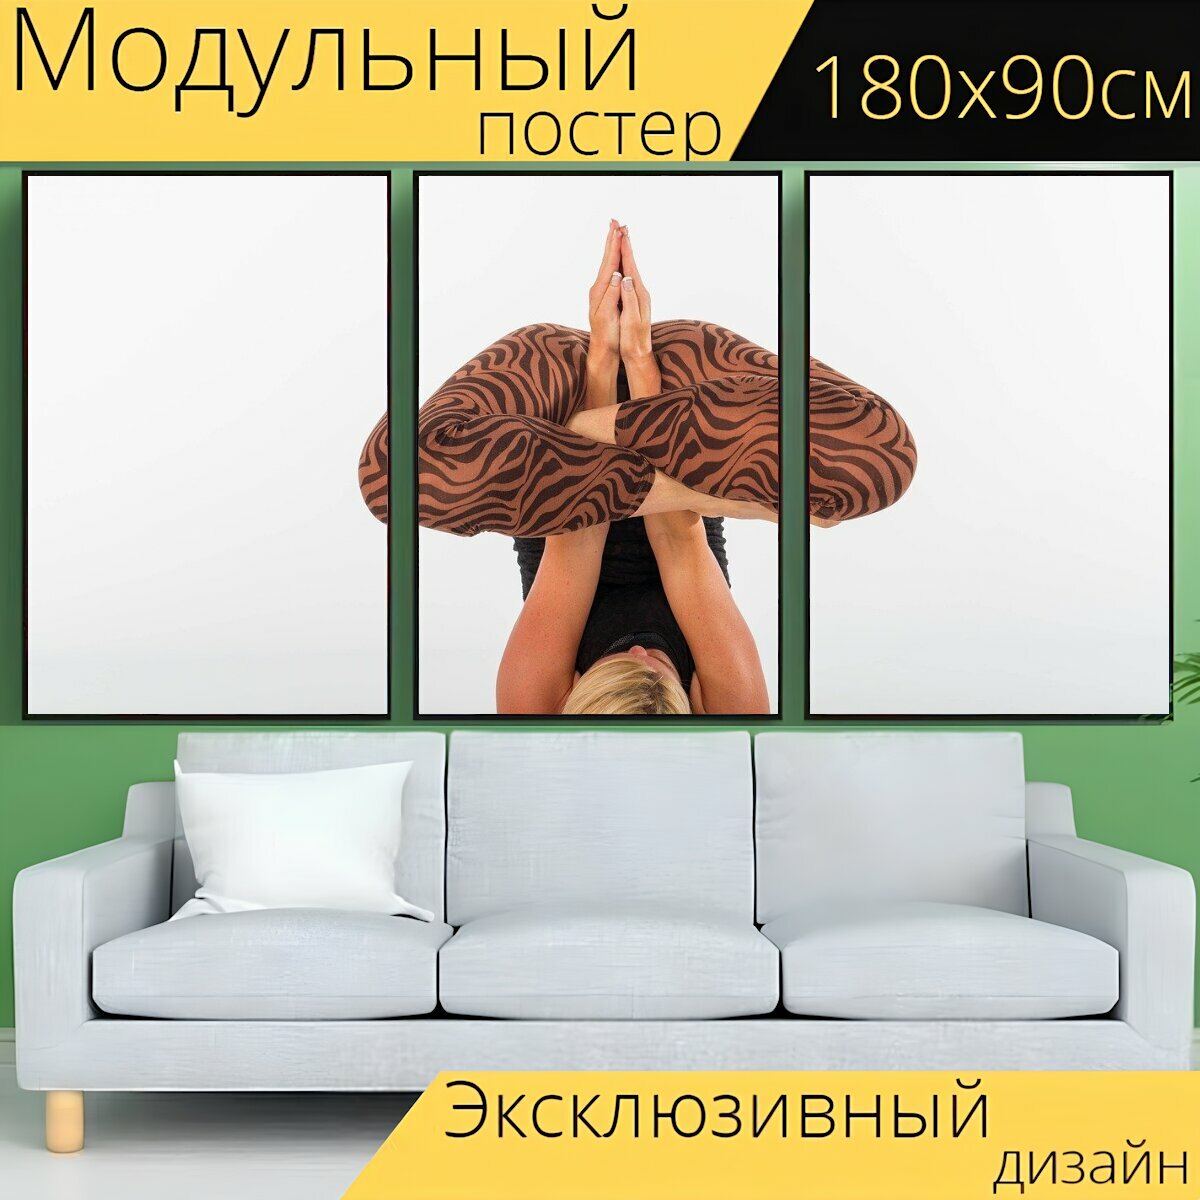 Модульный постер "Йога, фитнес, женщина" 180 x 90 см. для интерьера